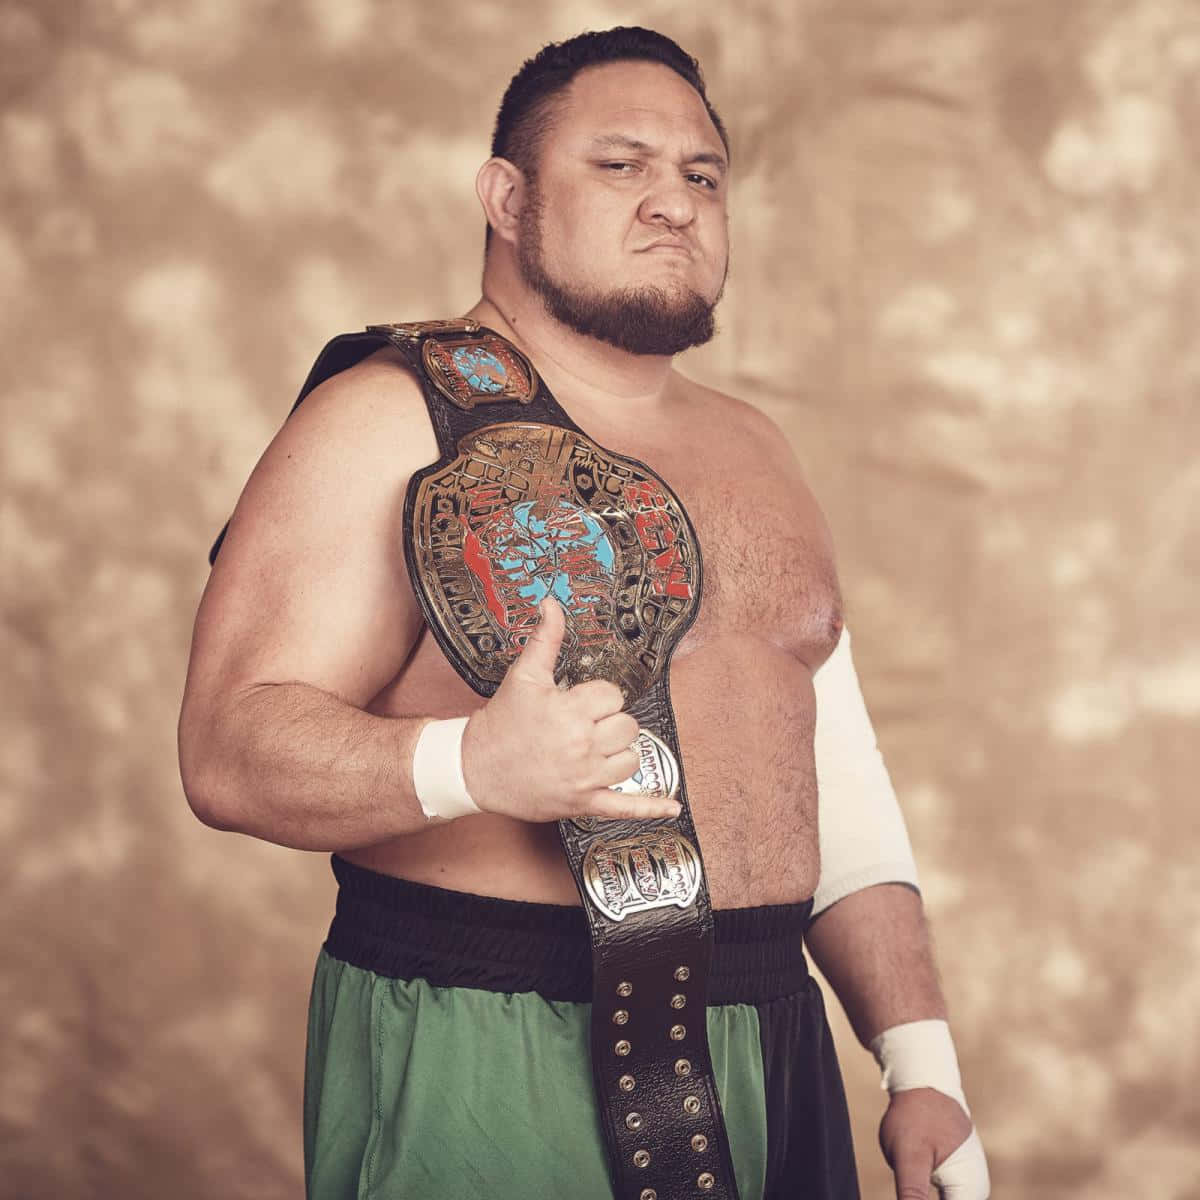 Samoa Joe Classic Ecw Title Championship Belt